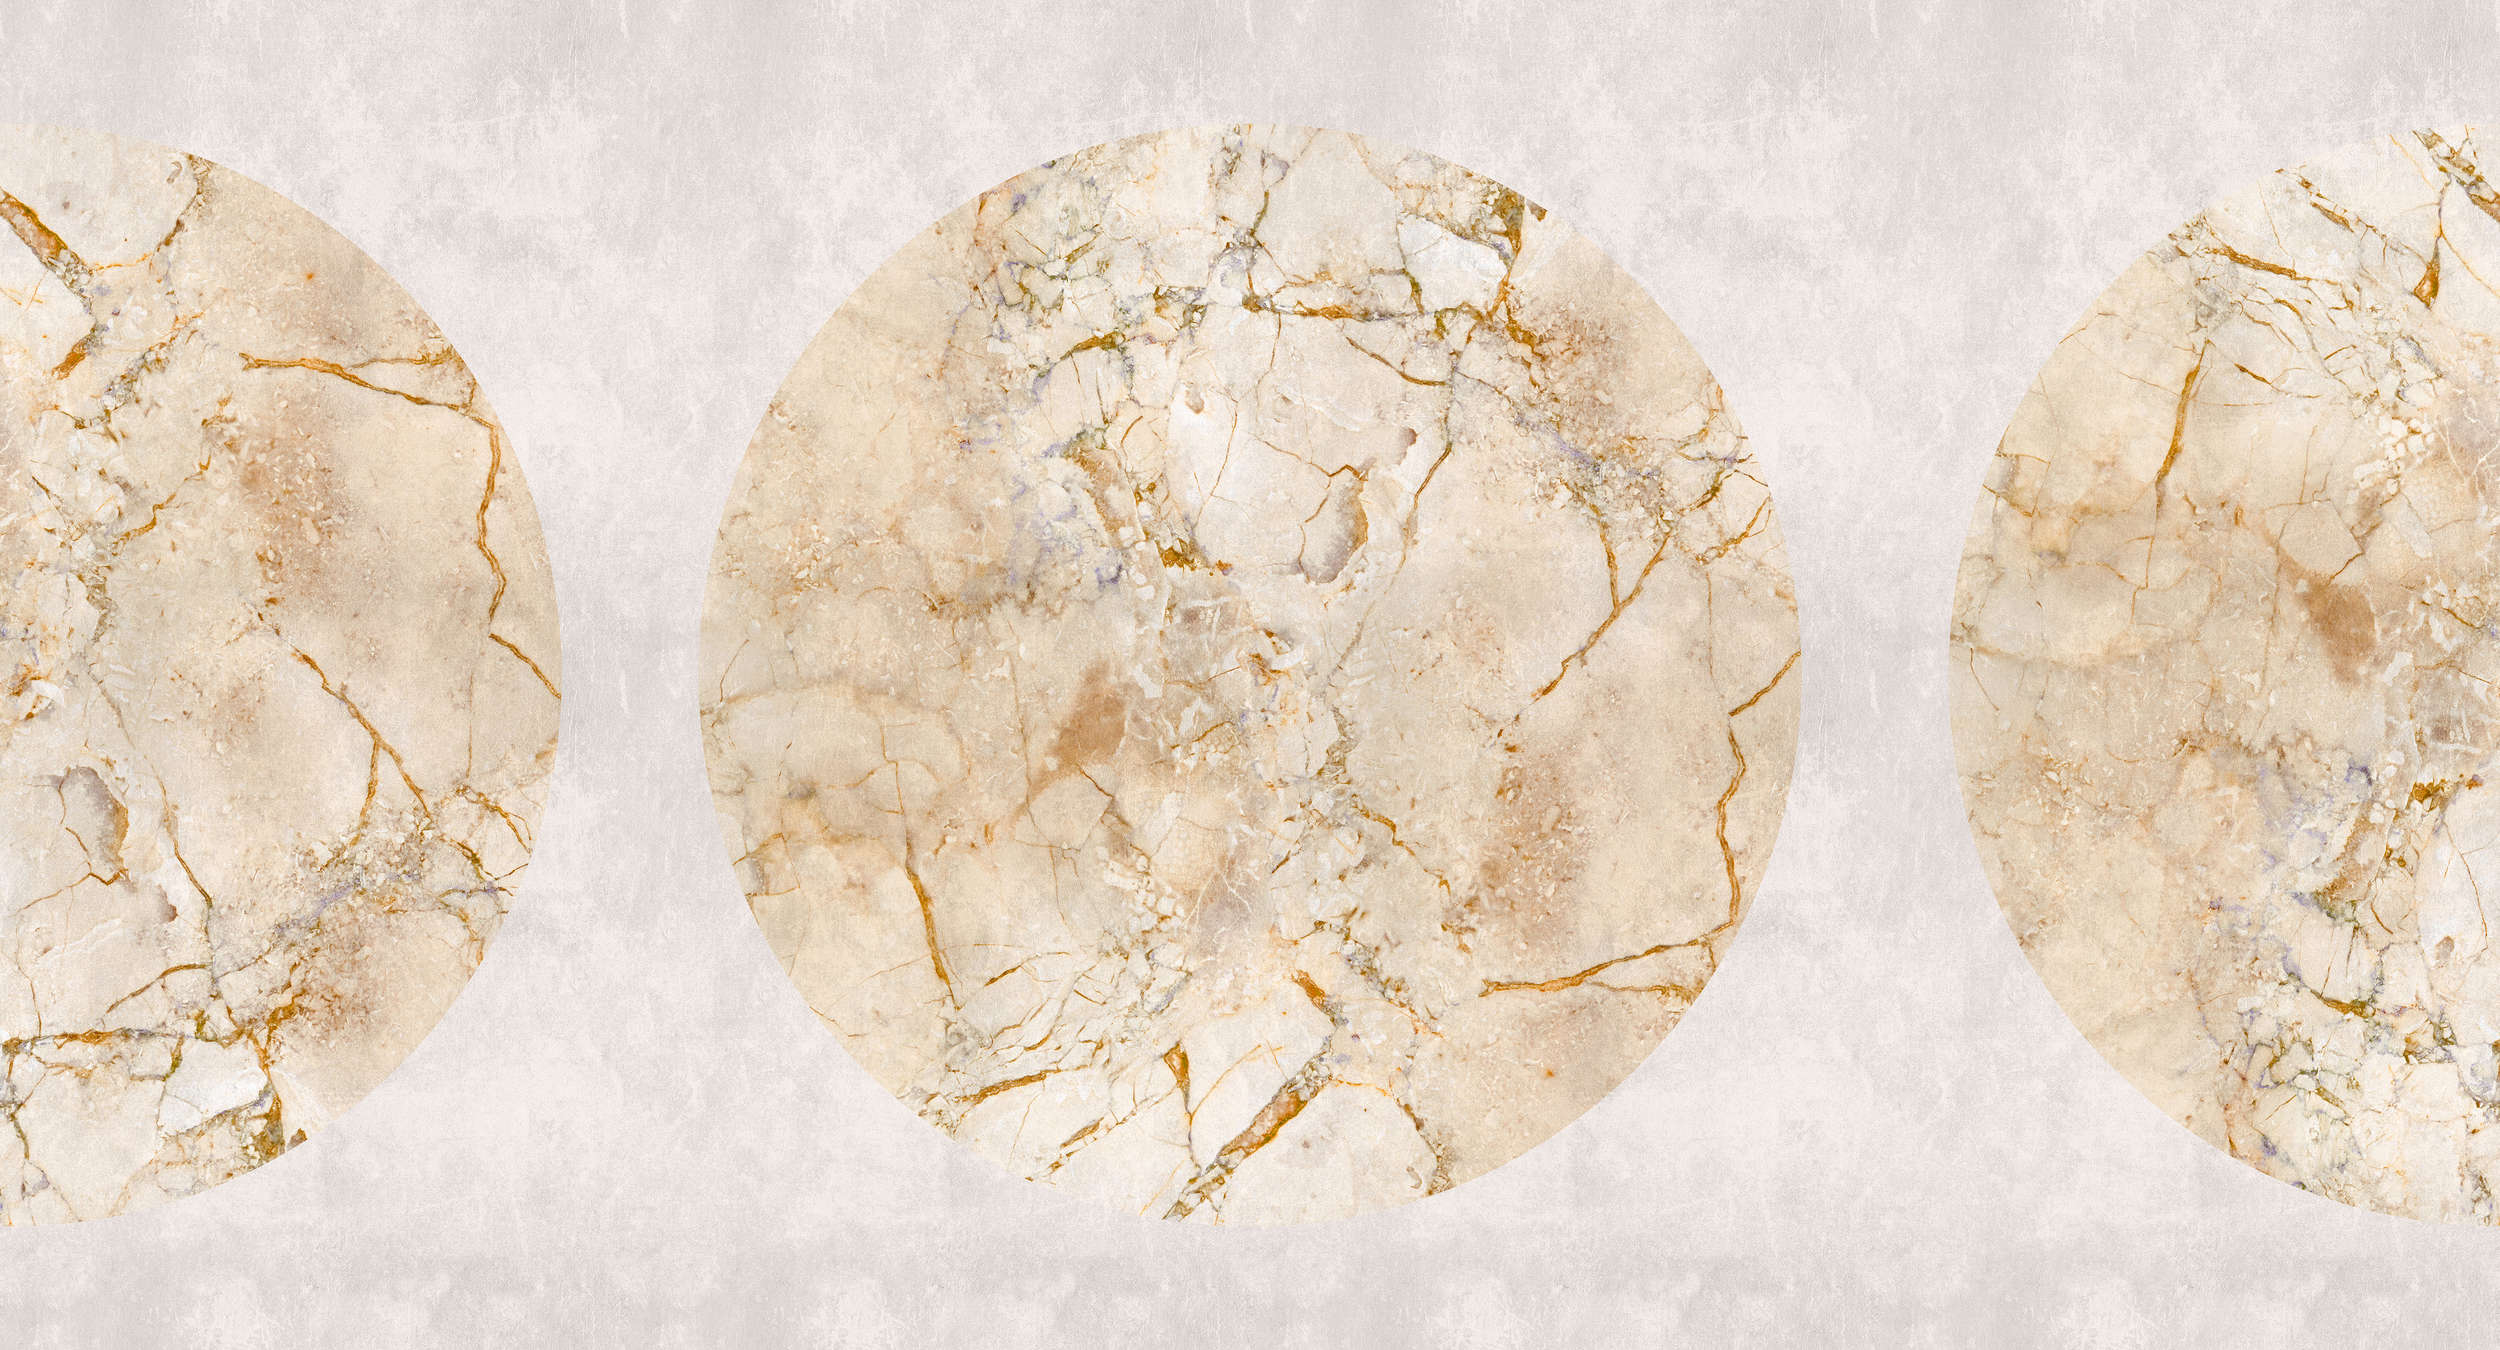             Venus 1 - Carta da parati in marmo dorato con motivo a cerchi e aspetto intonaco
        